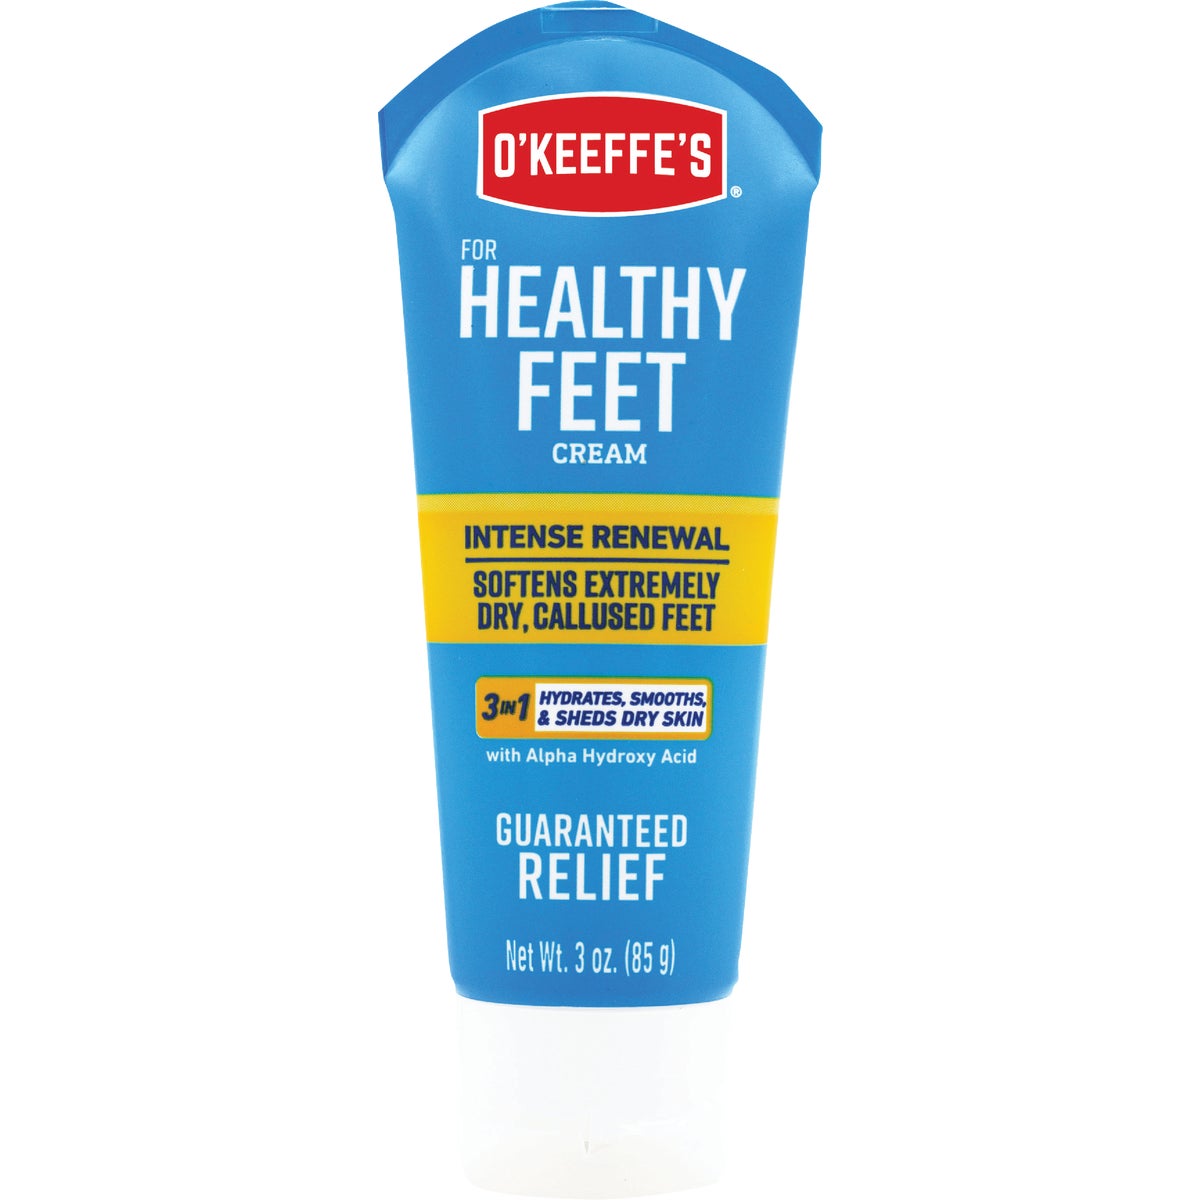 O'Keeffe's Healthy Feet 3 Oz. Tube Exfoliating Foot Cream